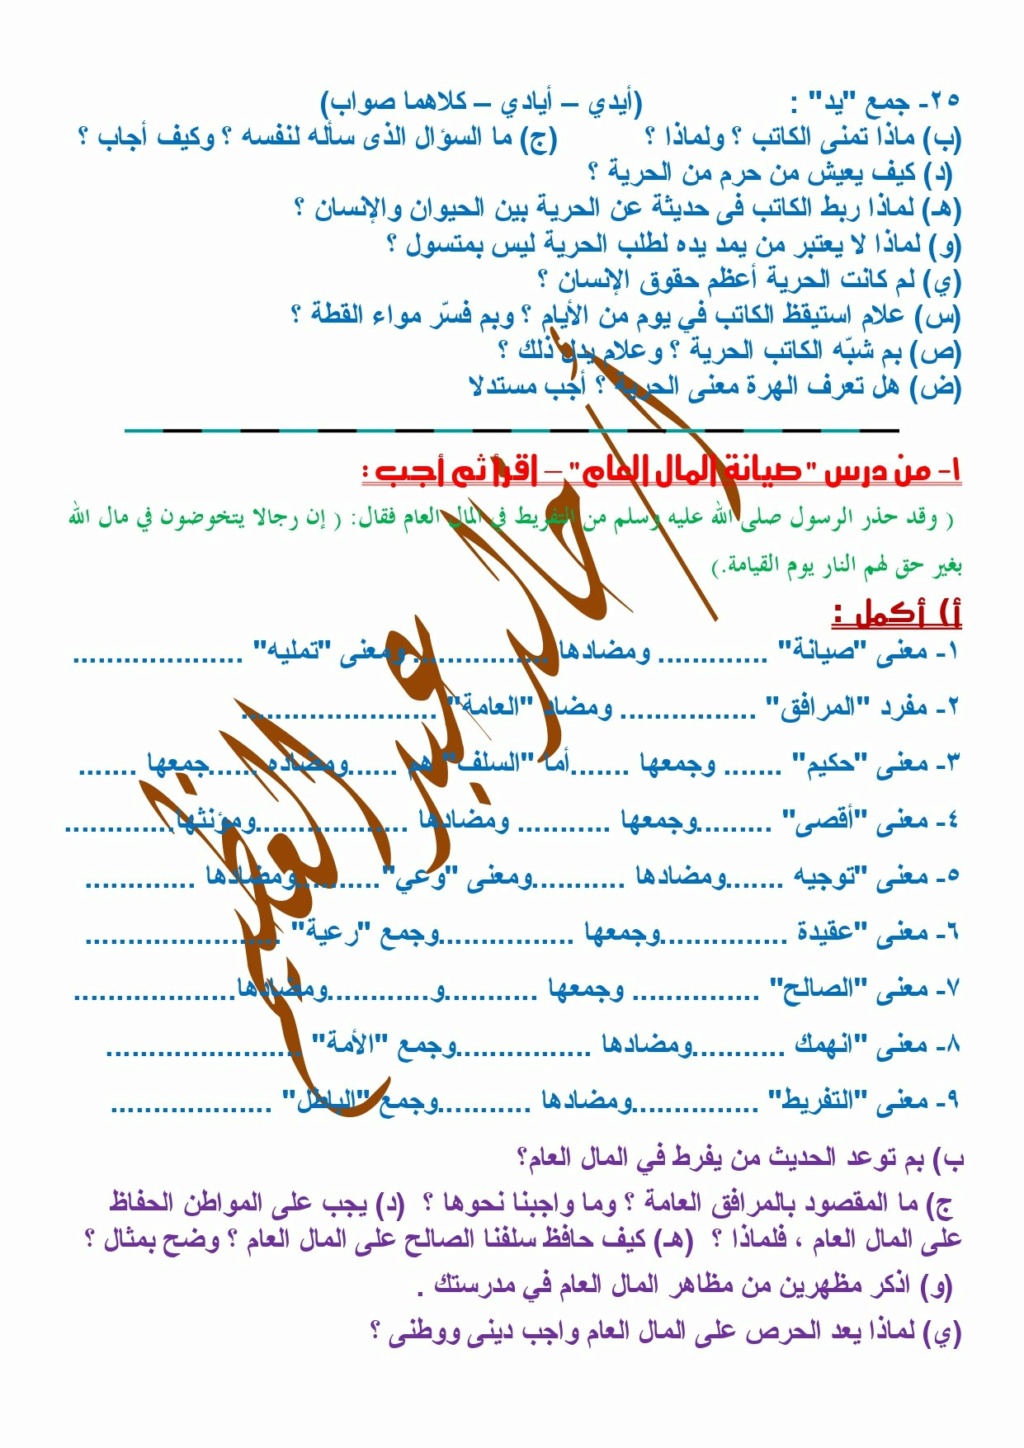 مراجعة القراءة ليلة الامتحان للصف الأول الإعدادي أ/ خالد عبد العظيم  1718